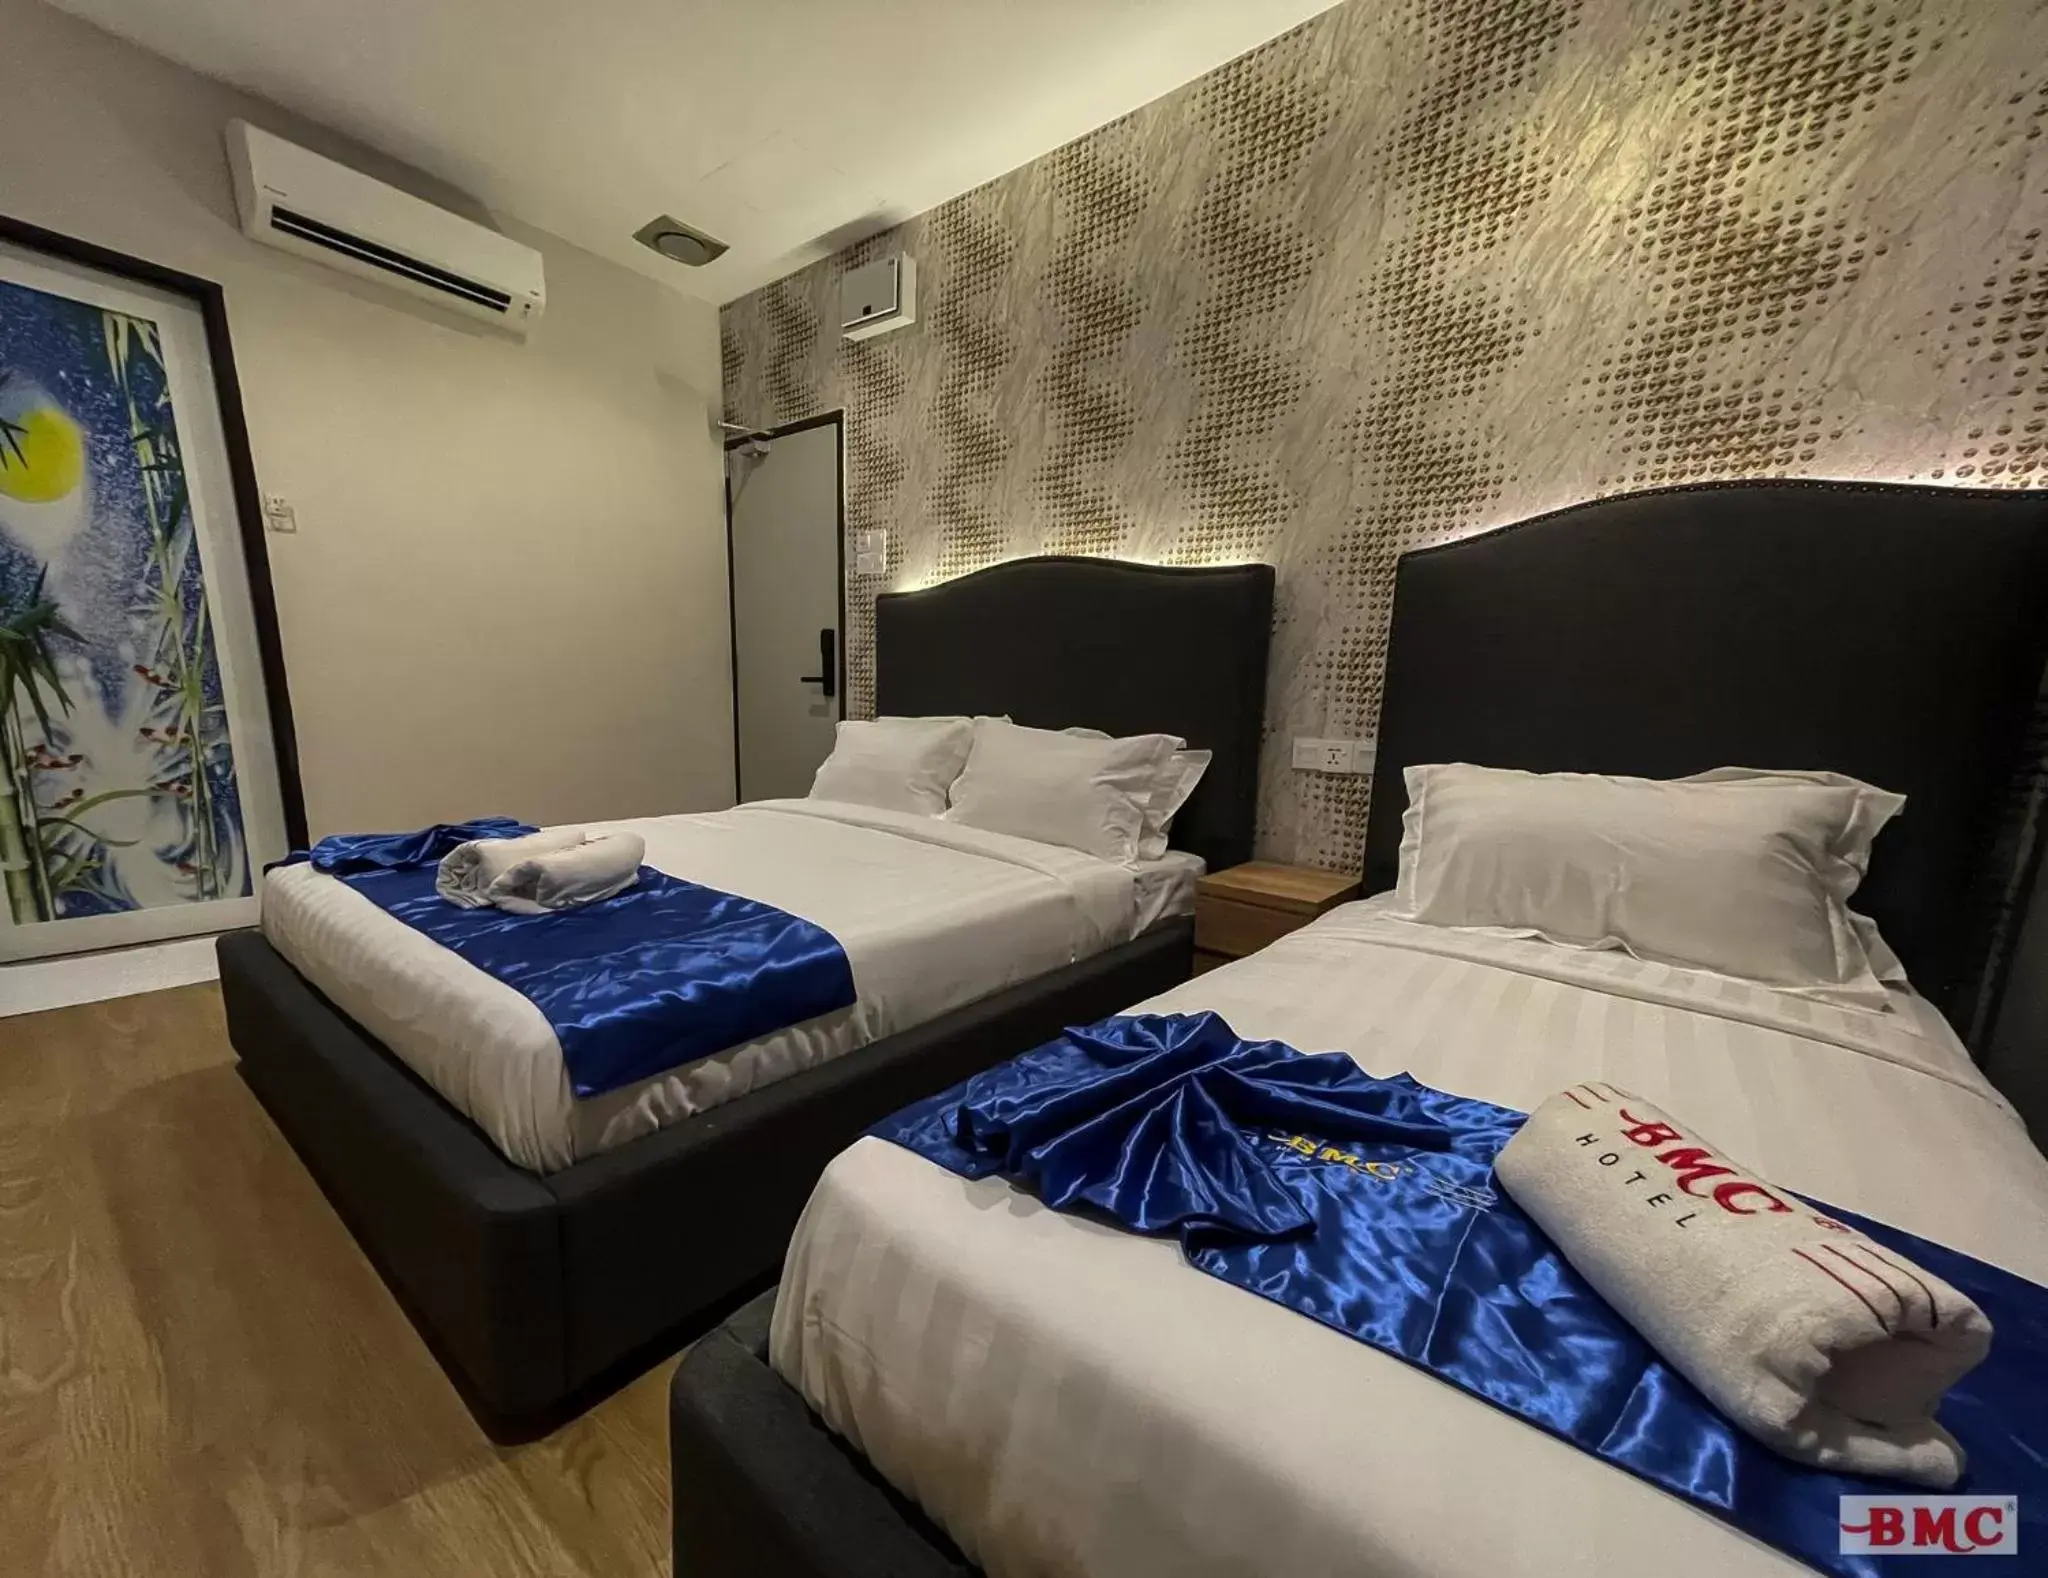 Bedroom, Bed in BMC Hotel